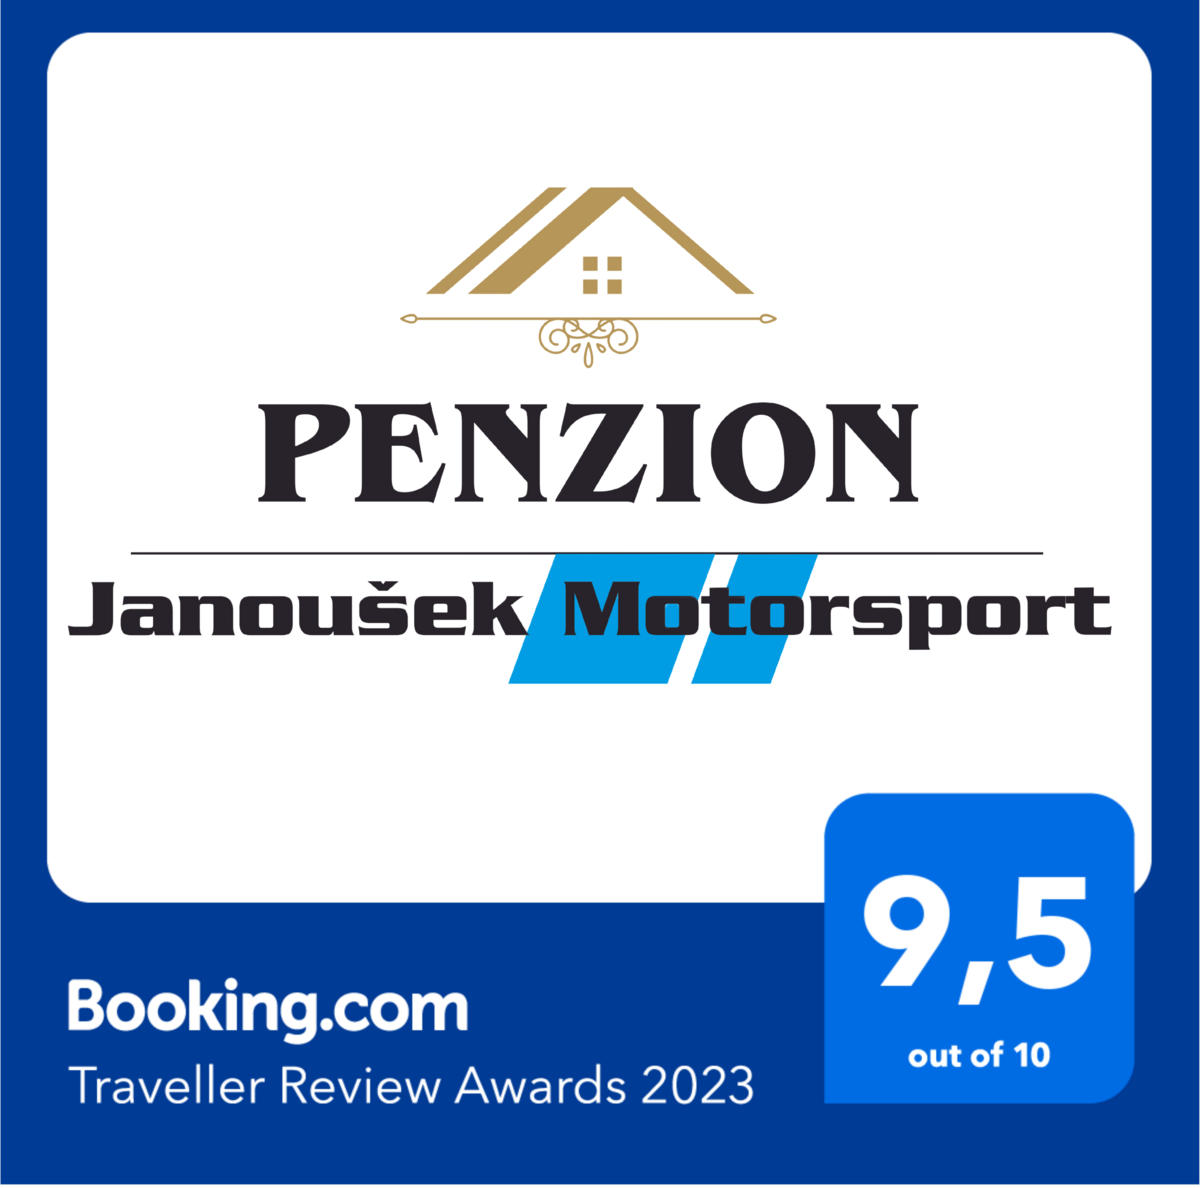 Hodnocení serveru booking.com pro Penzion Janoušek Motorsport